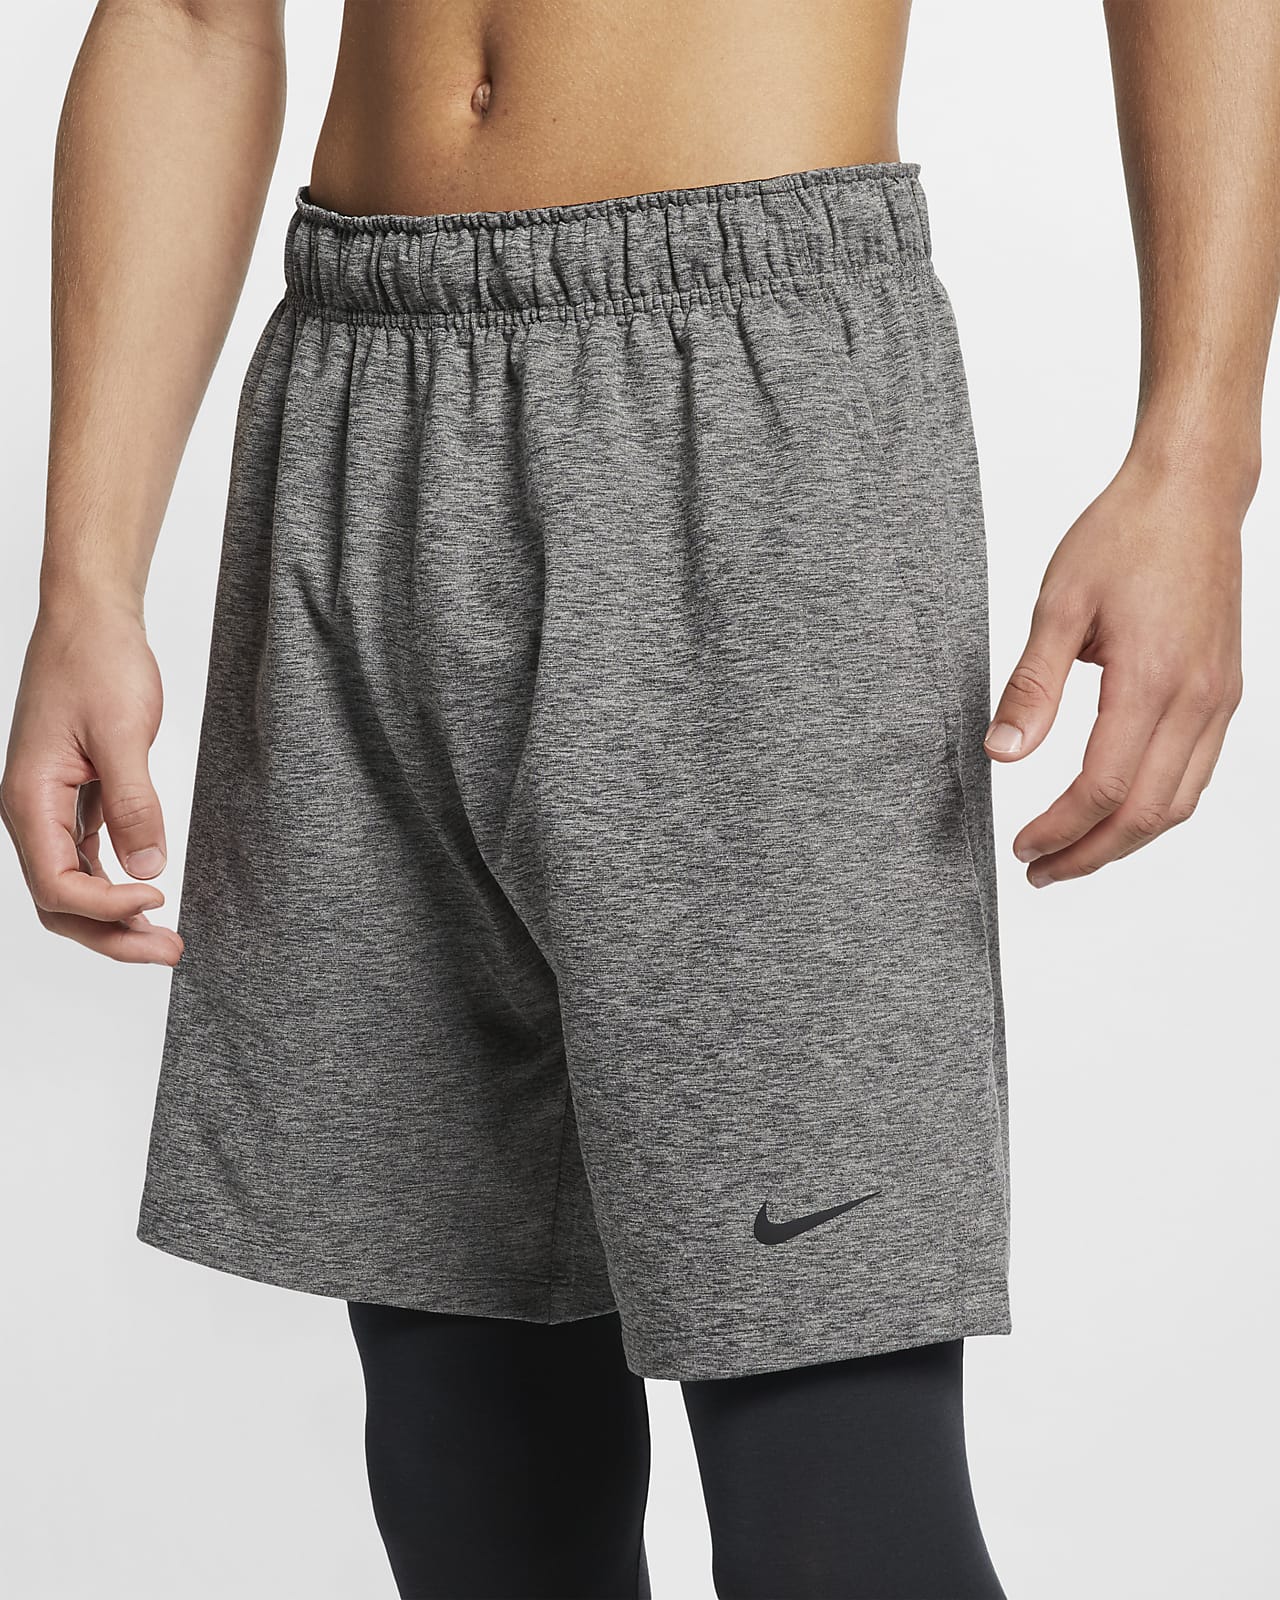 Nike Dri-FIT Men's Yoga Training Shorts 